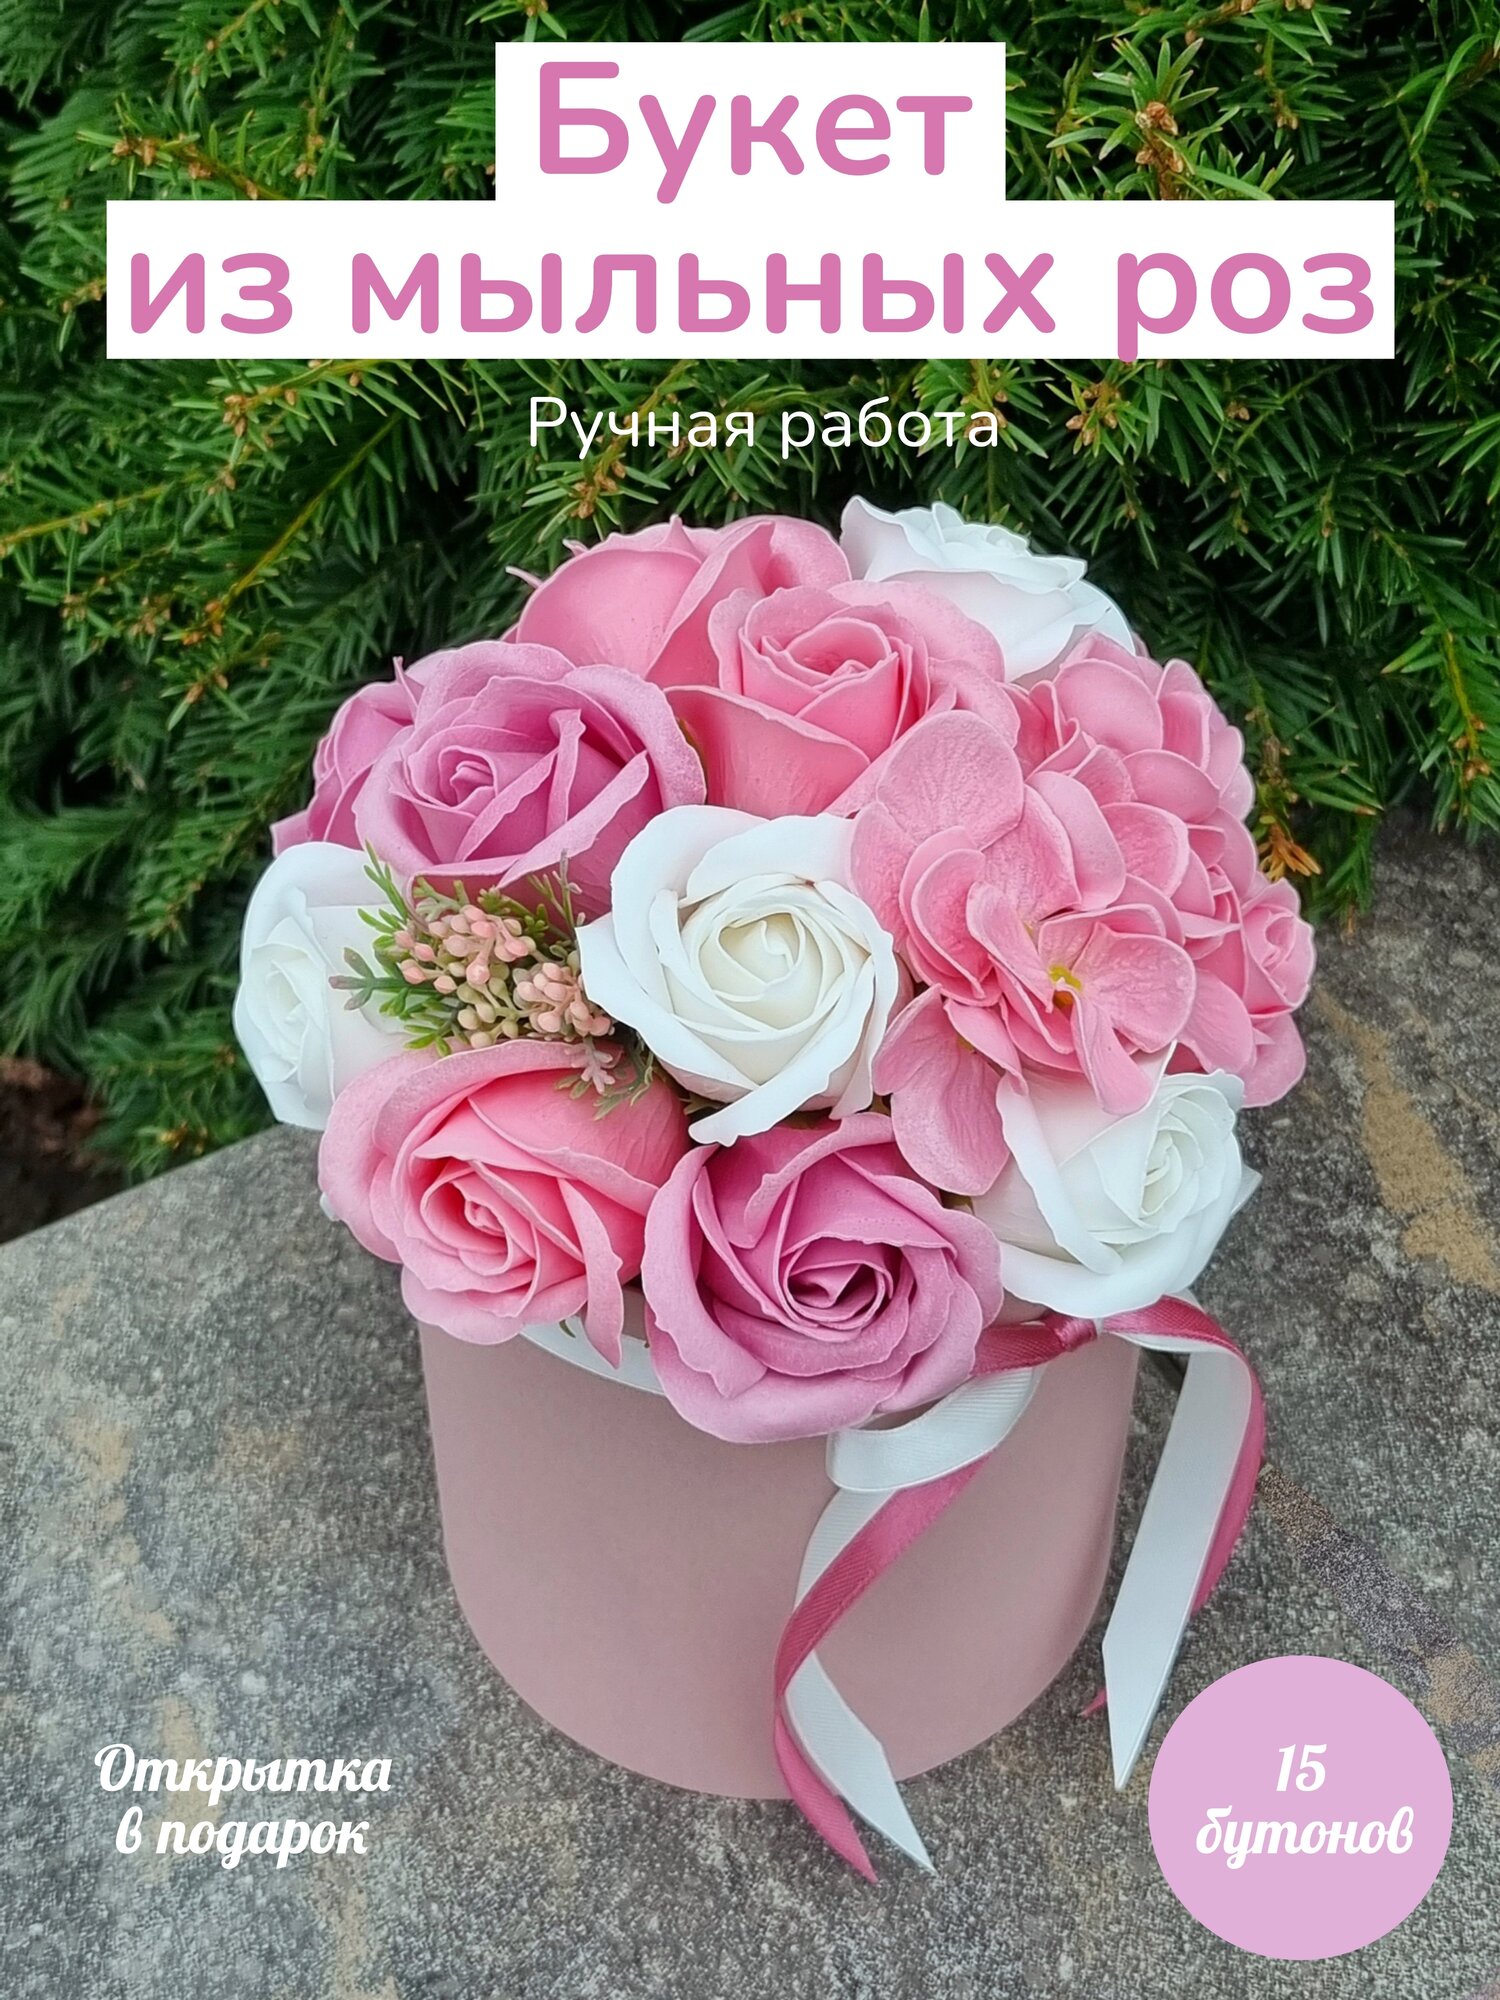 Букет из мыльных роз, мыльные цветы, подарок на День рождения маме, жене,подруге, любимой девушке, учителю, воспитателю — купить в интернет-магазинепо низкой цене на Яндекс Маркете